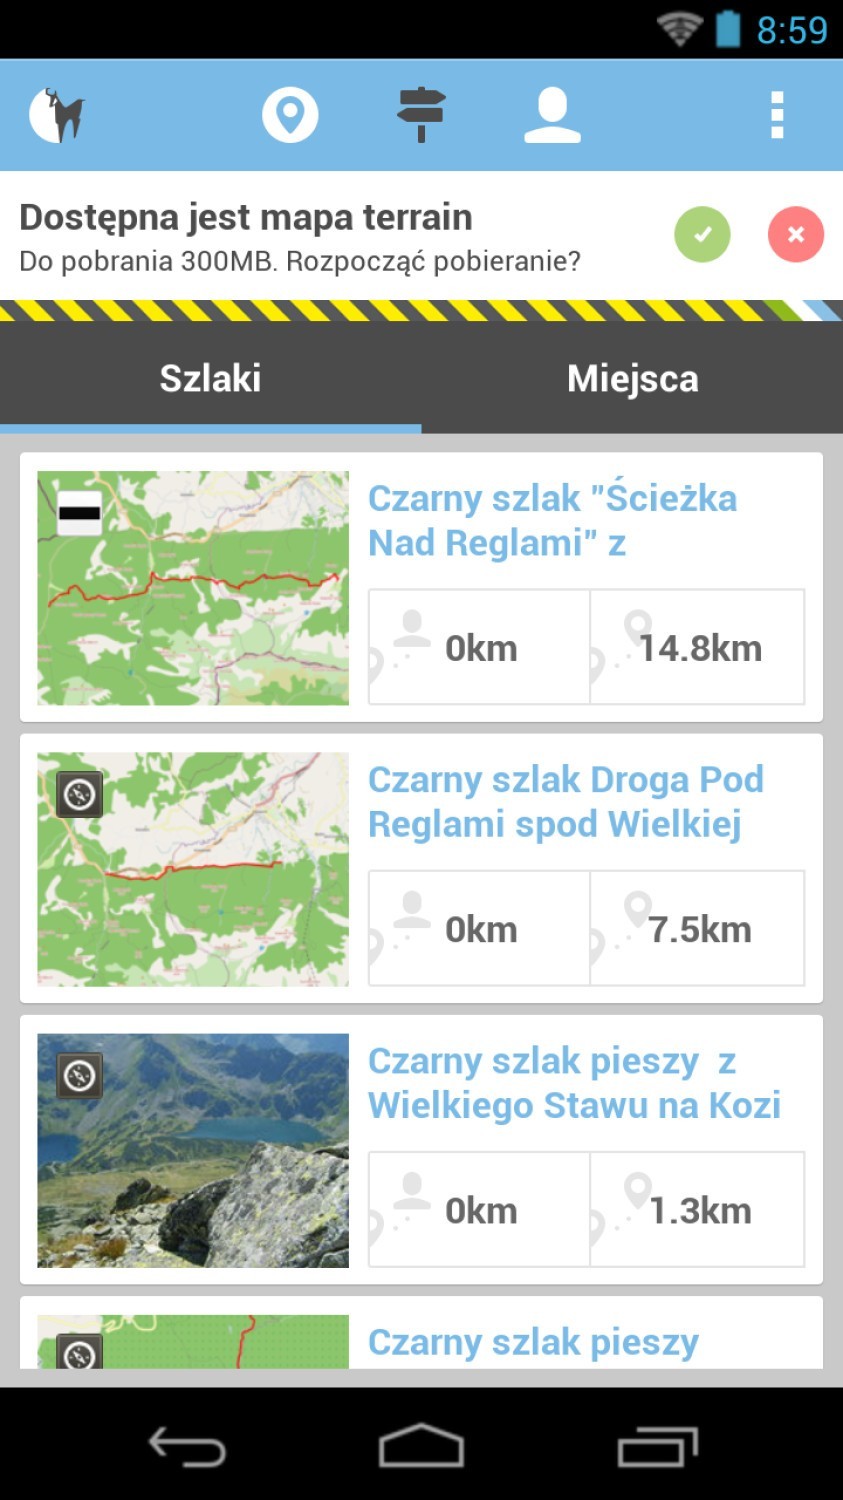 W Tatrach już możesz korzystać z aplikacji na smartfona

W...